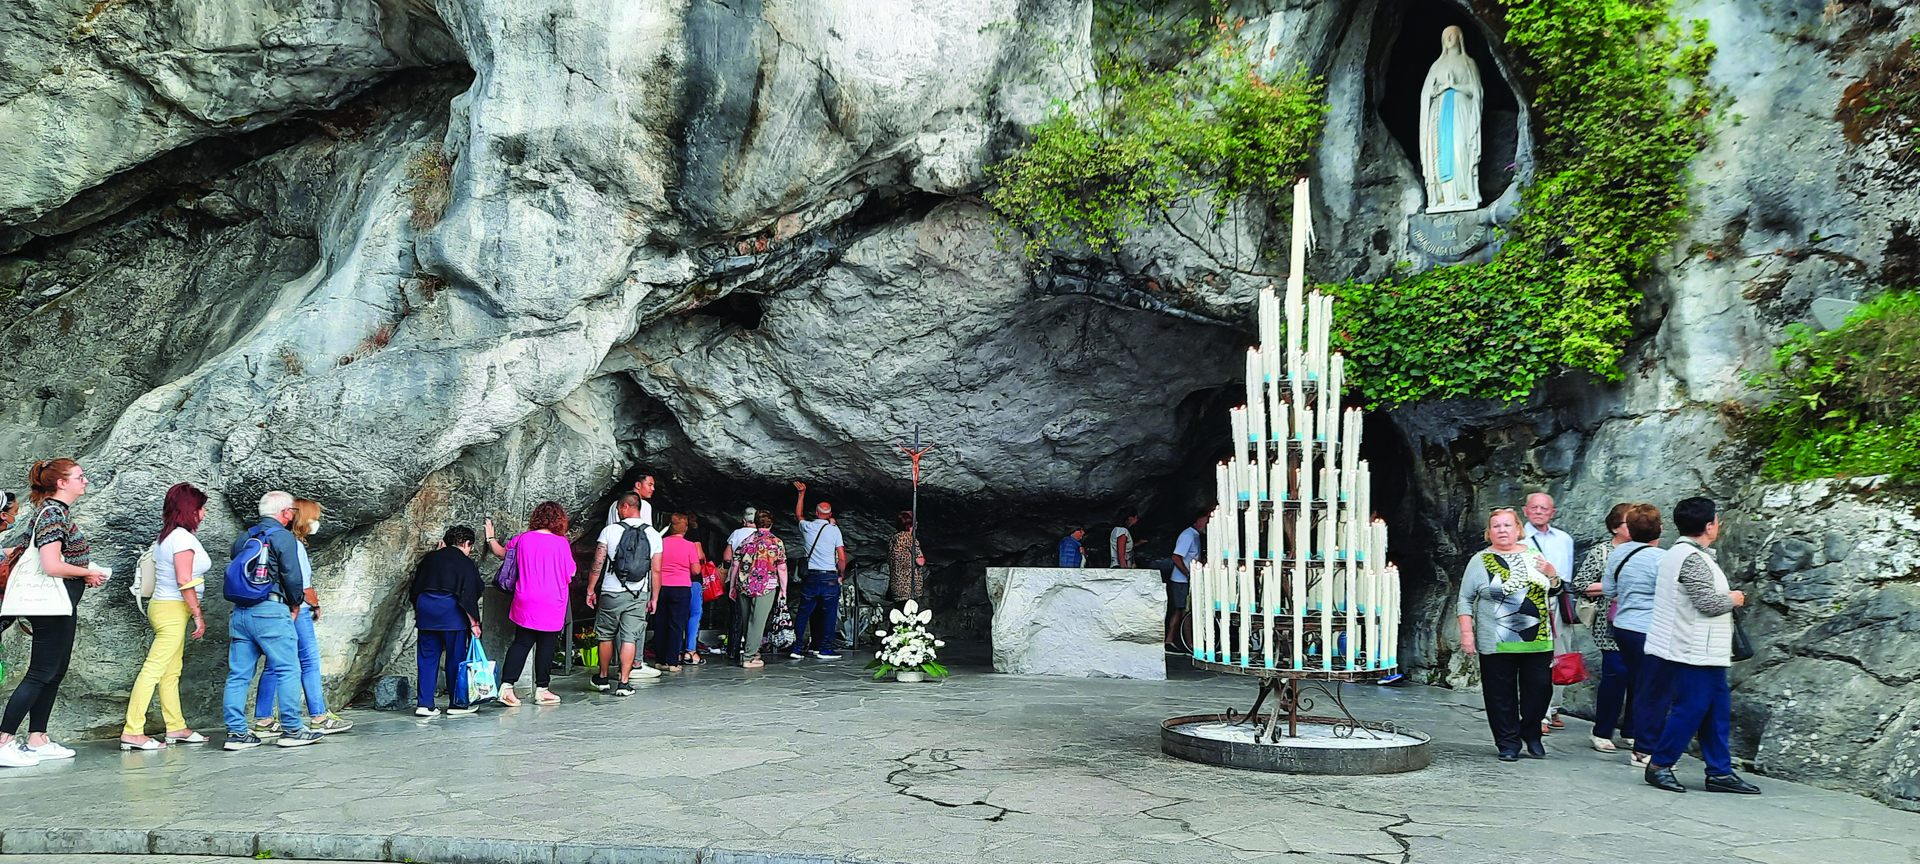 Pilgrimme i kø for at røre den hellige grotte i Lourdes i Sydfrankrig. (Foto Pia Sørensen, 2022)